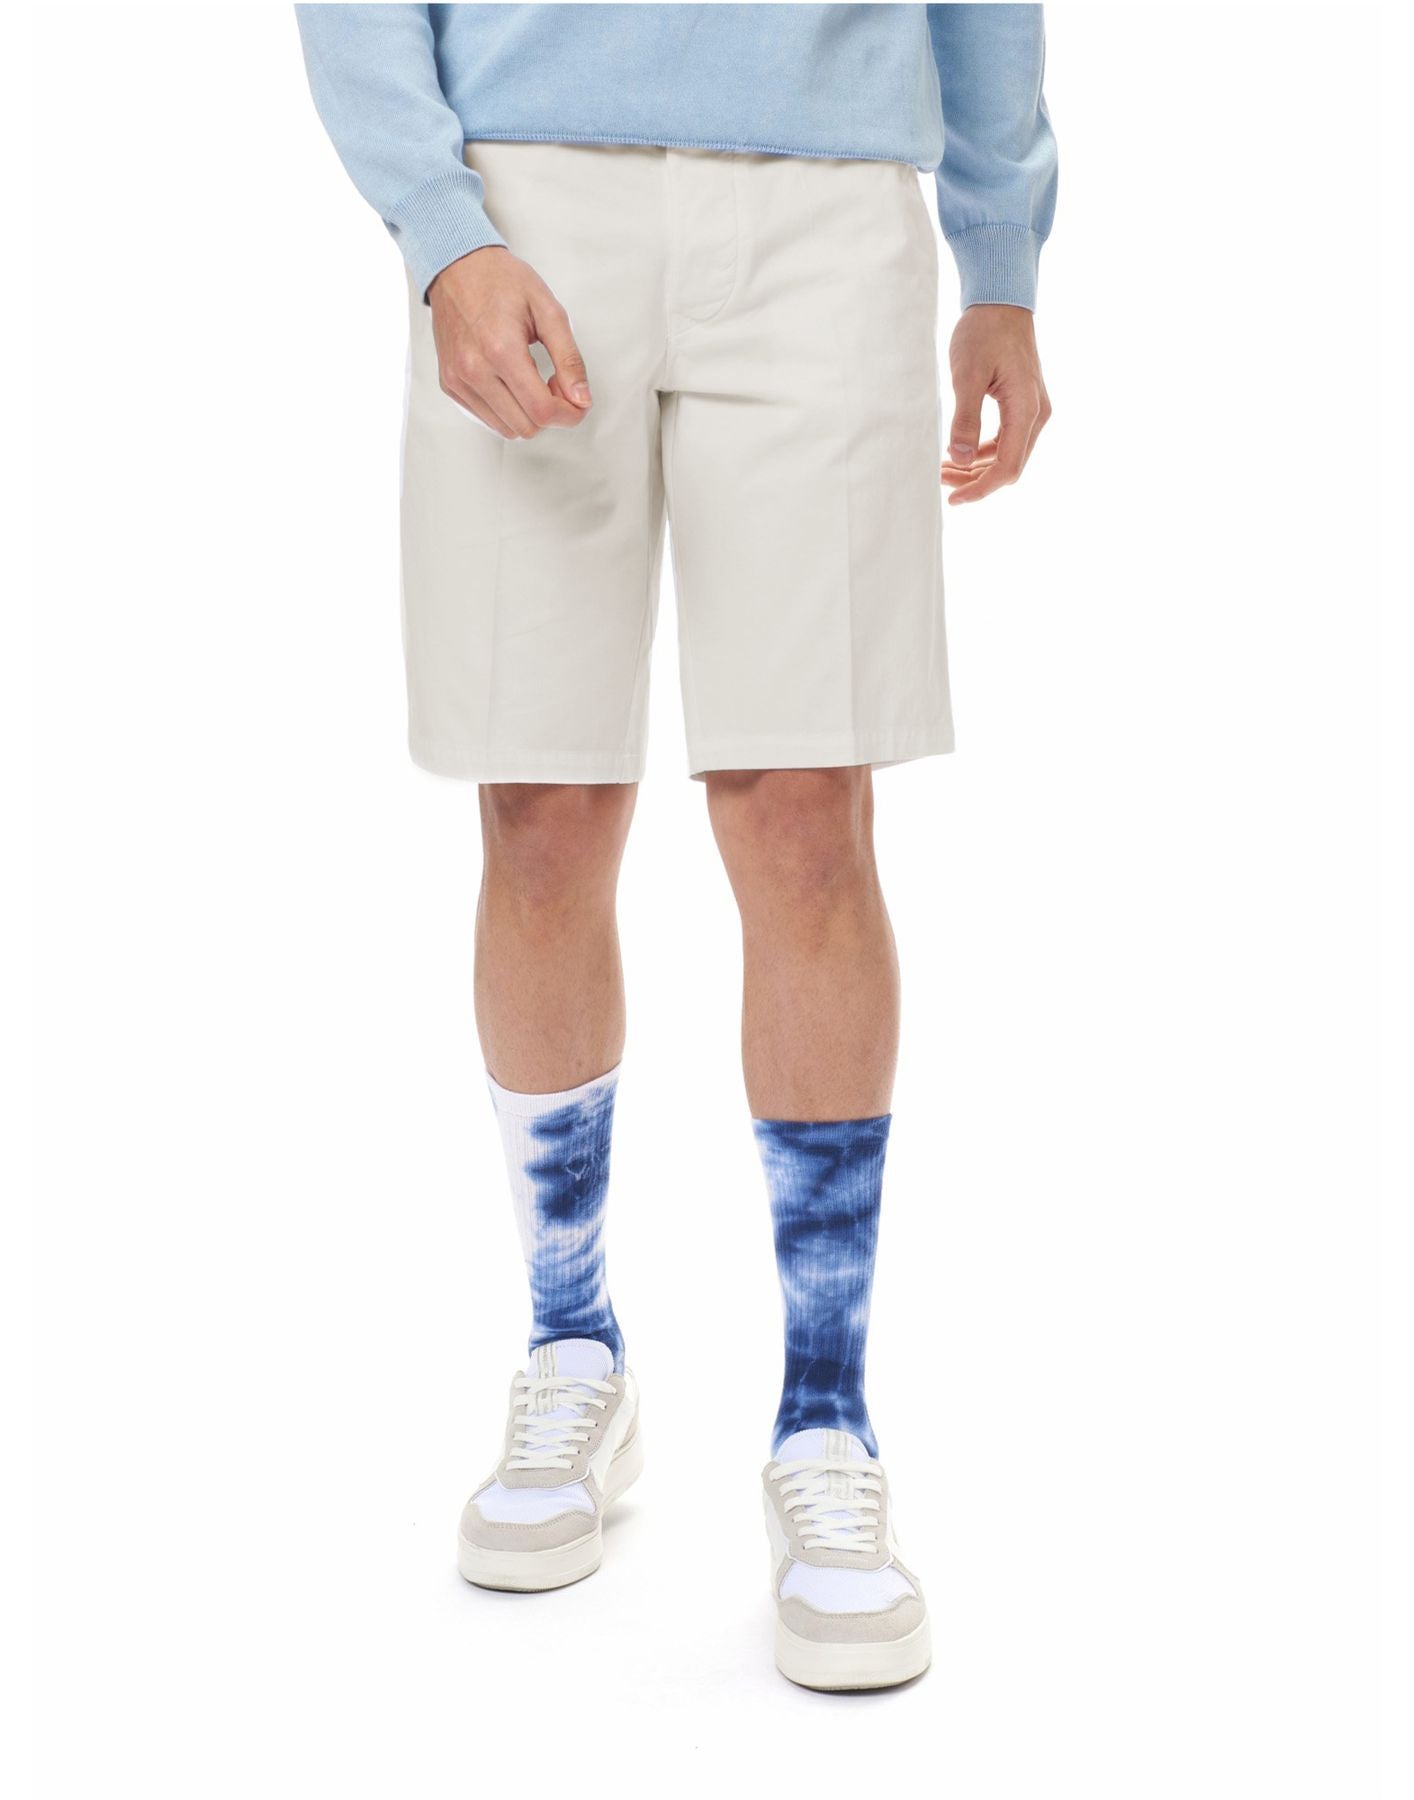 Pantalones cortos para hombre 24SBLUP02406 006855 102 Blauer